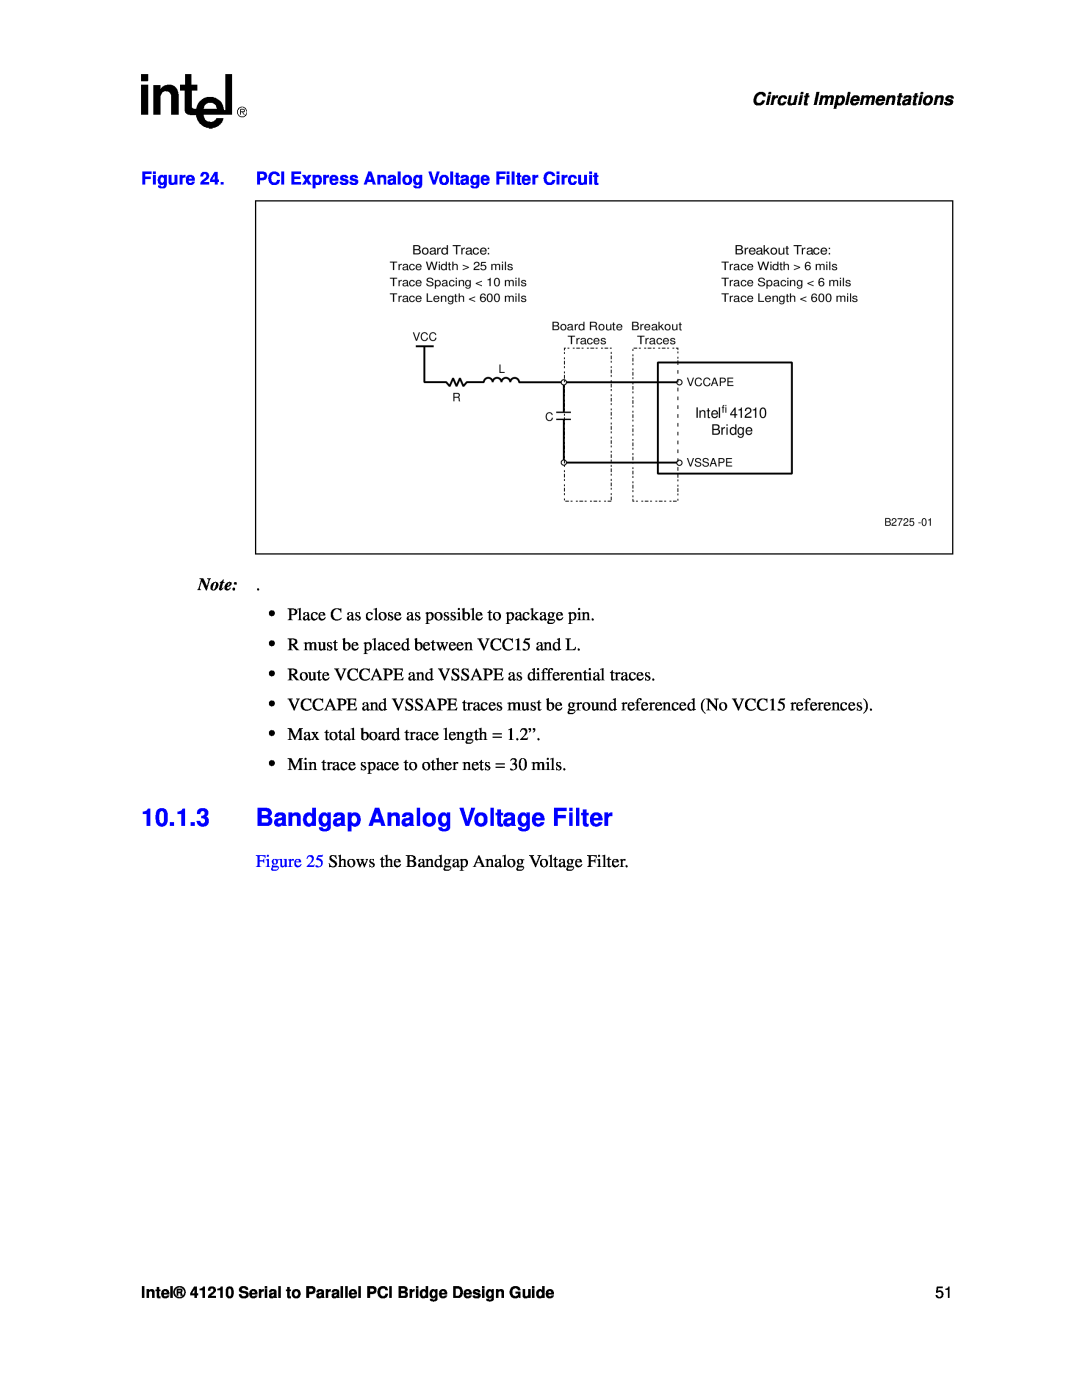 Intel 41210 manual Bandgap Analog Voltage Filter, PCI Express Analog Voltage Filter Circuit, Circuit Implementations 